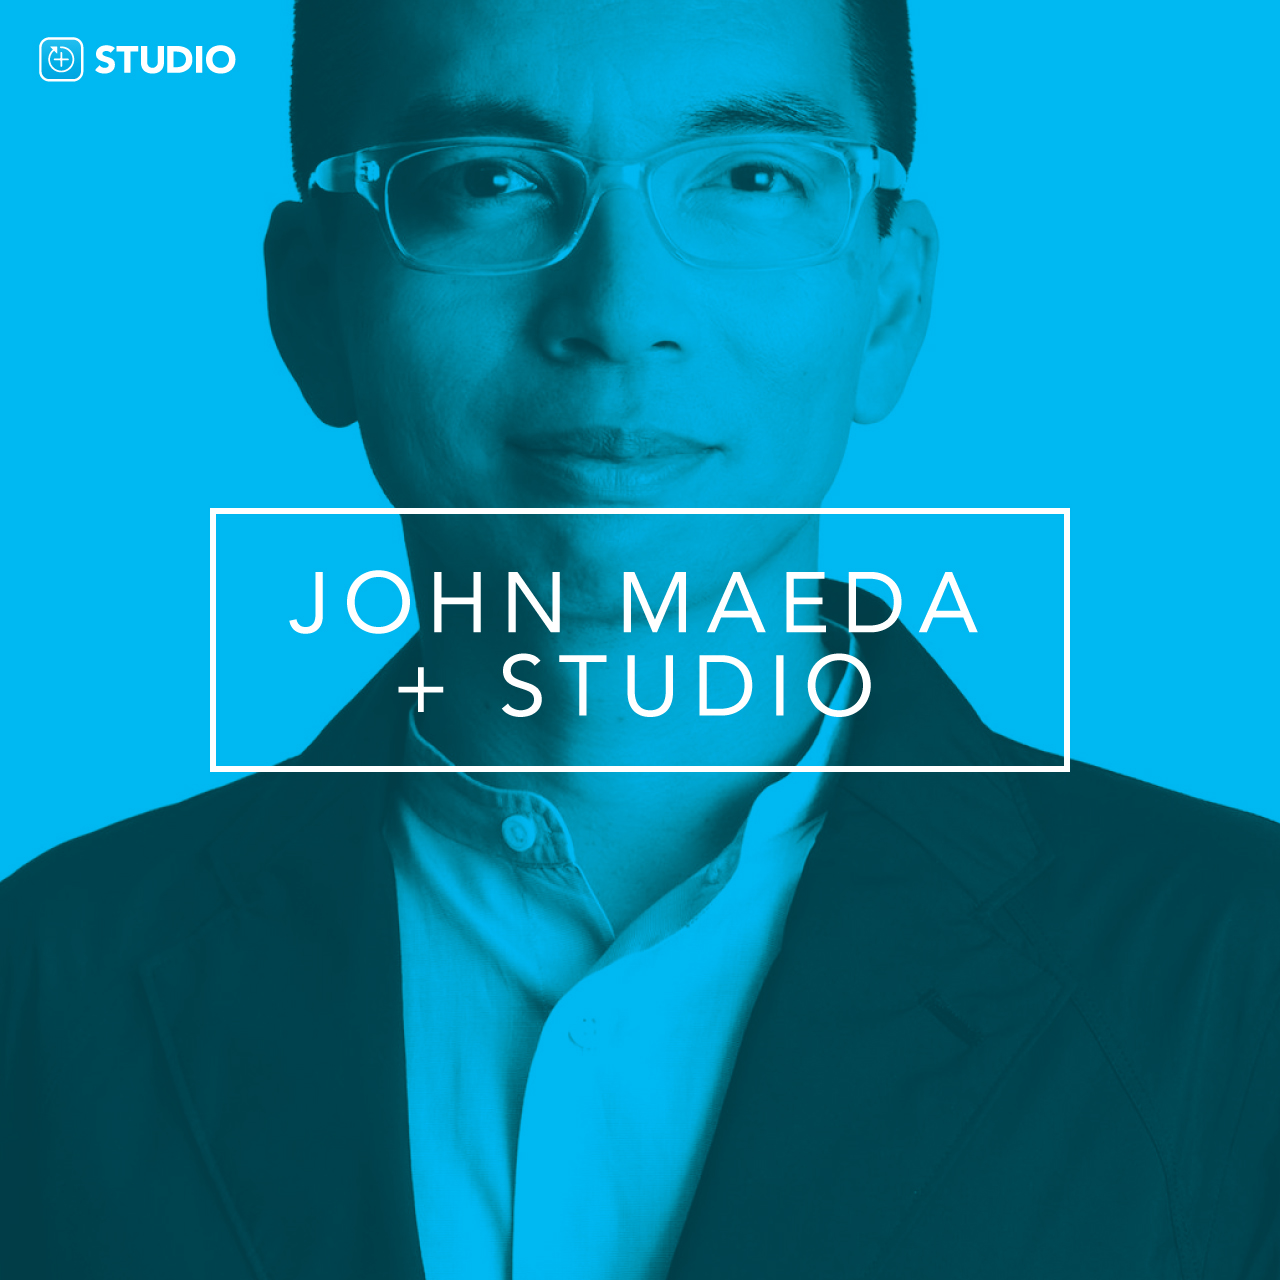 John Maeda joins Studio